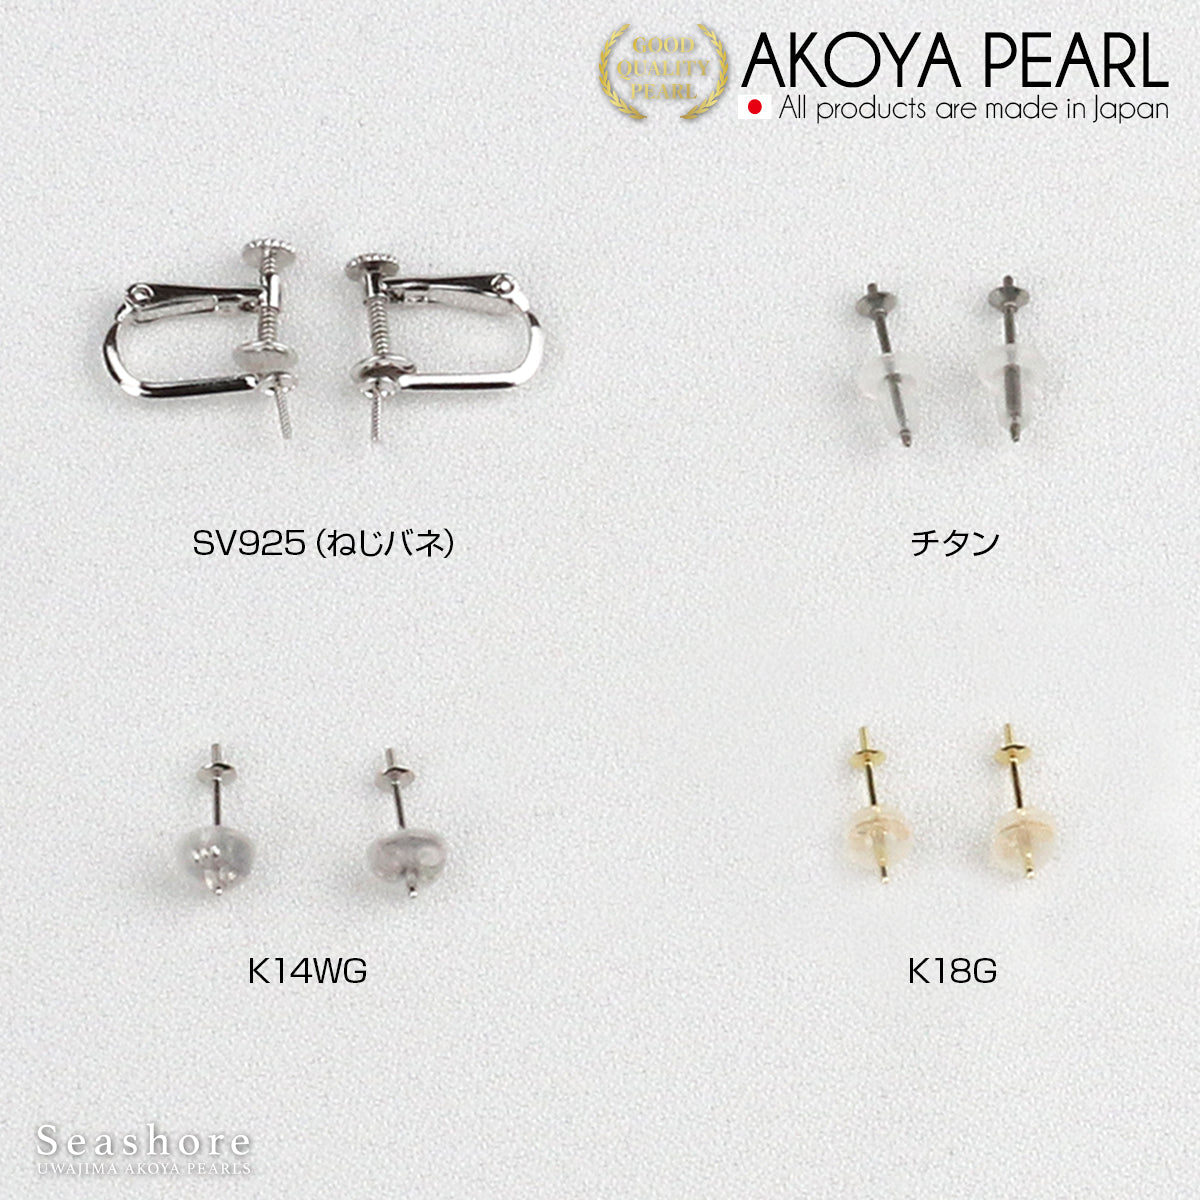 [花玉认证珍珠] 正装项链 2 件装 [8.0-8.5 毫米]（含耳环）Akoya 珍珠带收纳盒 [新日本珍珠研究所真品证书]